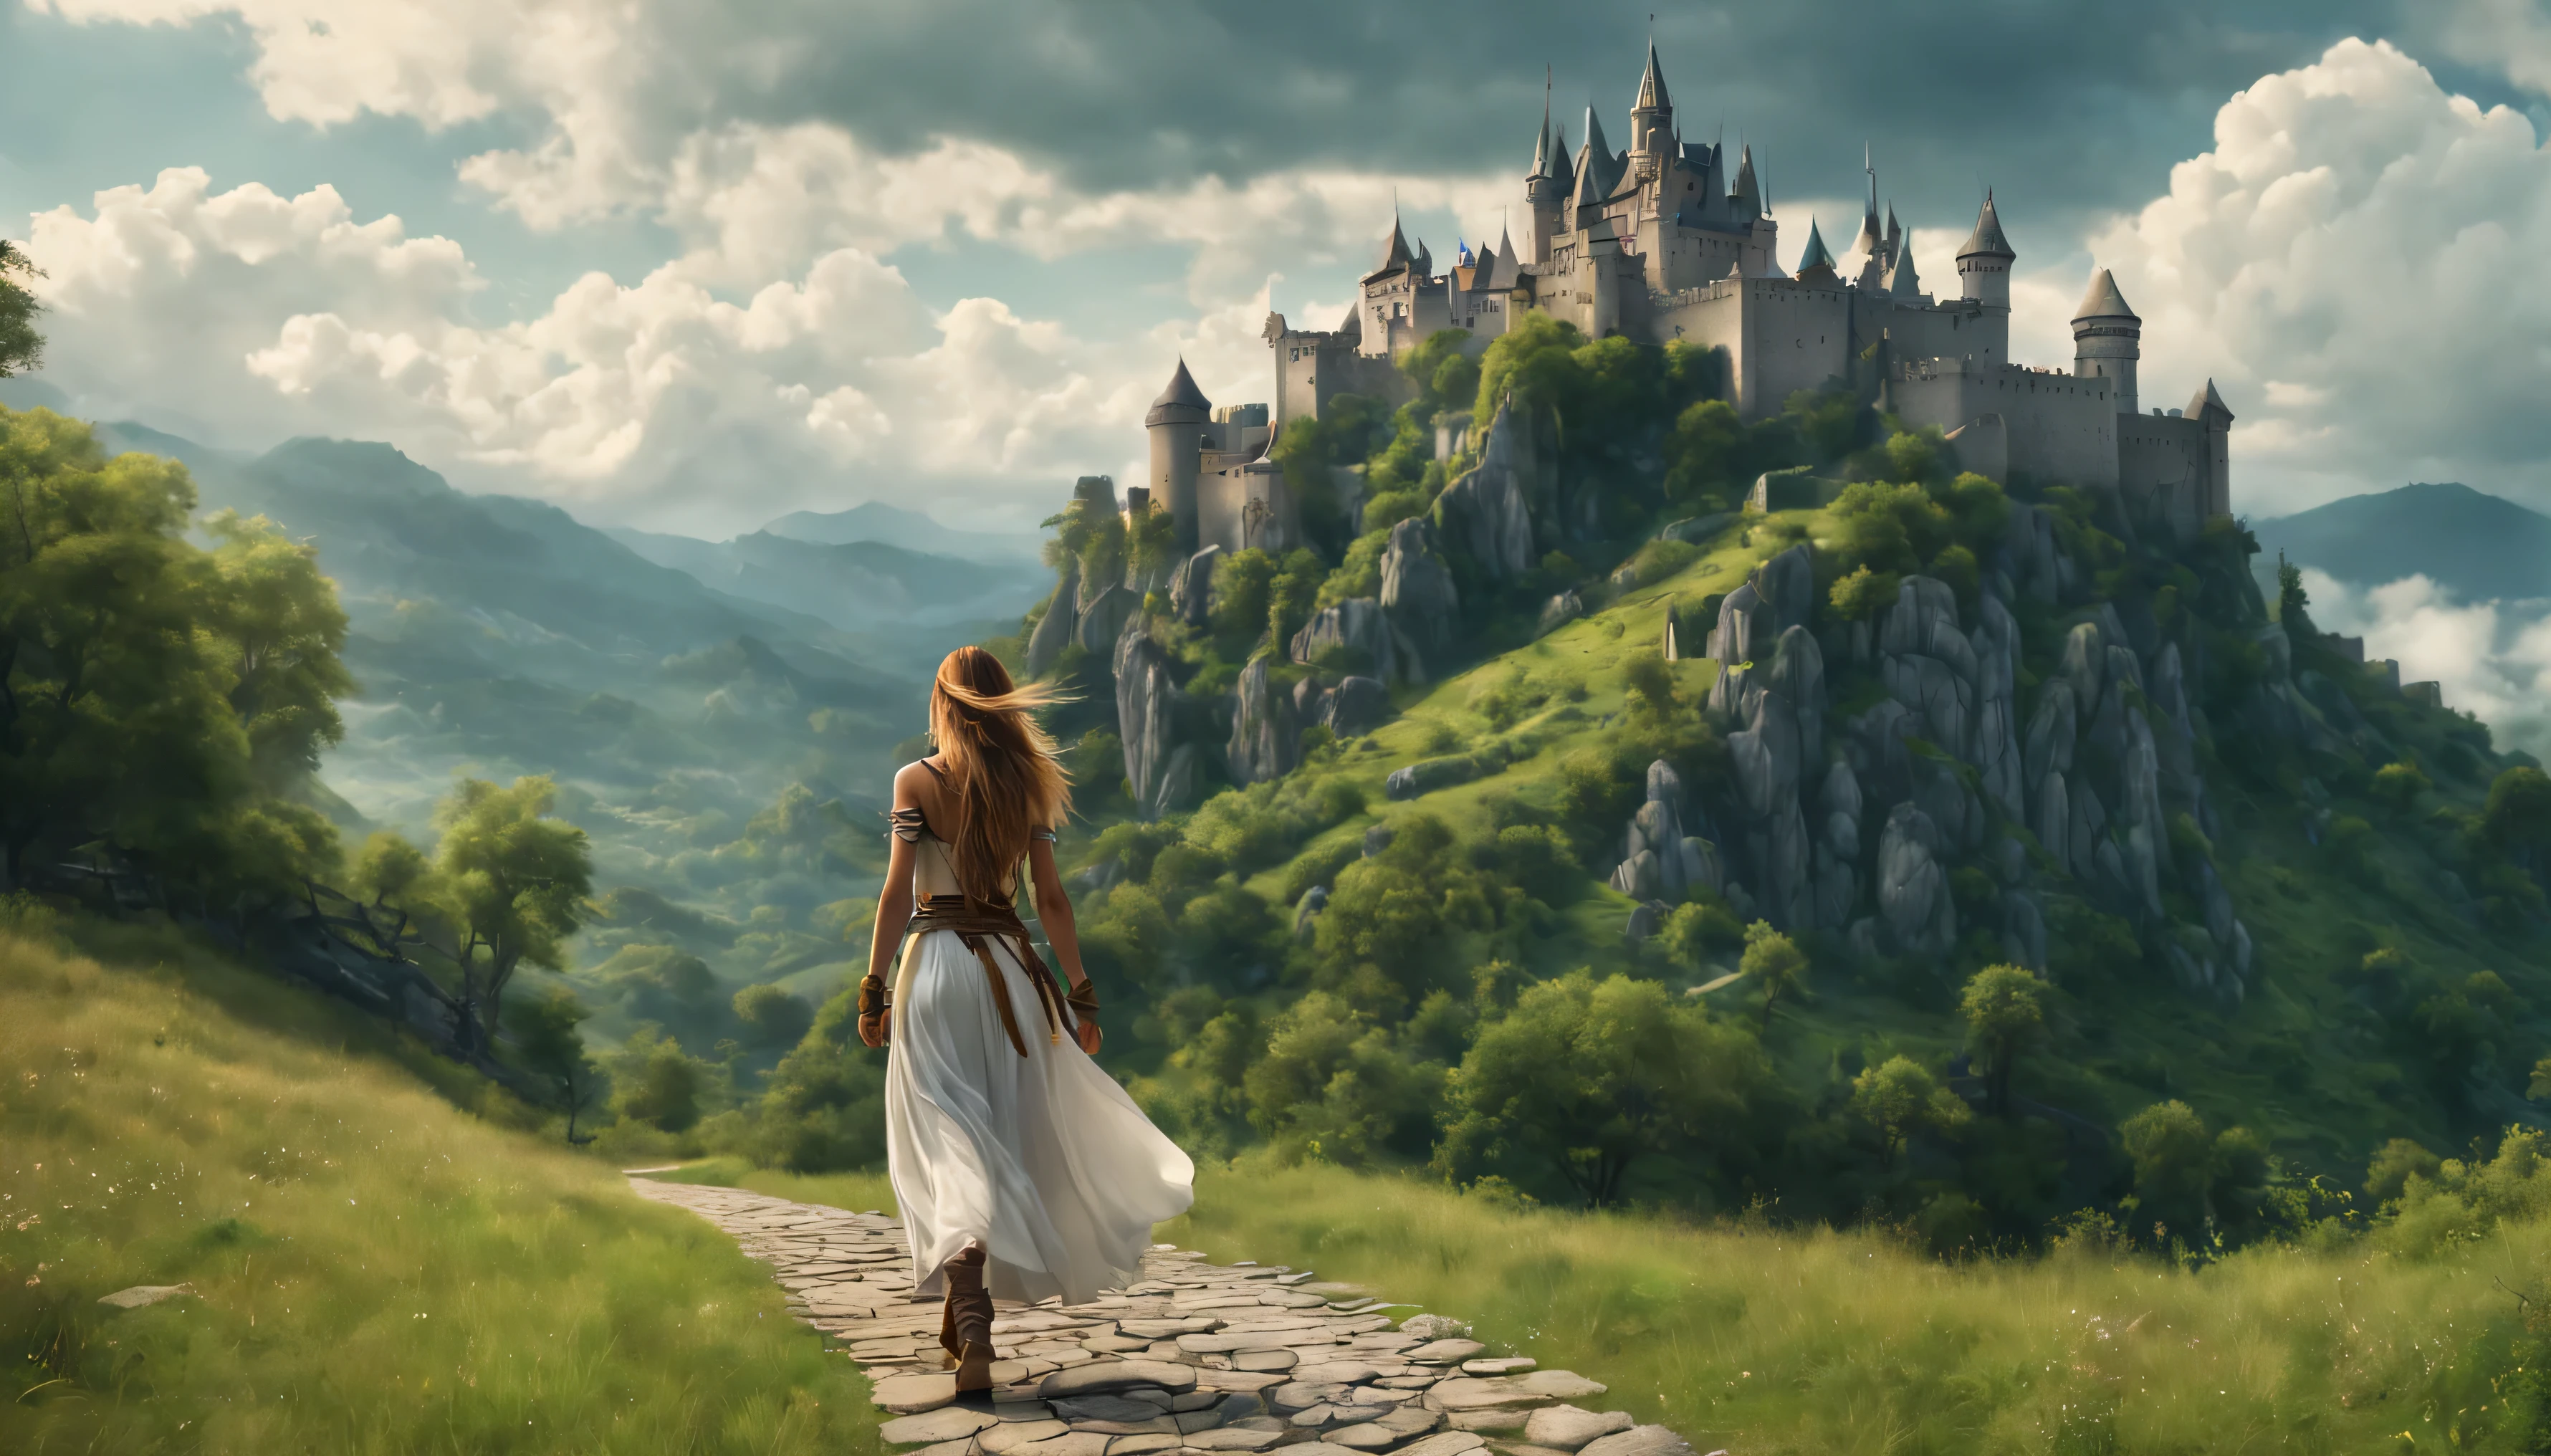 Vista lateral: Una chica guerrera con el pelo largo camina por el sendero., mirando el castillo en la montaña, atmósfera mística de verano, espesas y esponjosas nubes cuelgan bajas al pie de la montaña, Precioso paisaje, absurdo, Obra maestra, alto detalle, difícil, 8k, 4KUHD, HDR, calidad cinematográfica